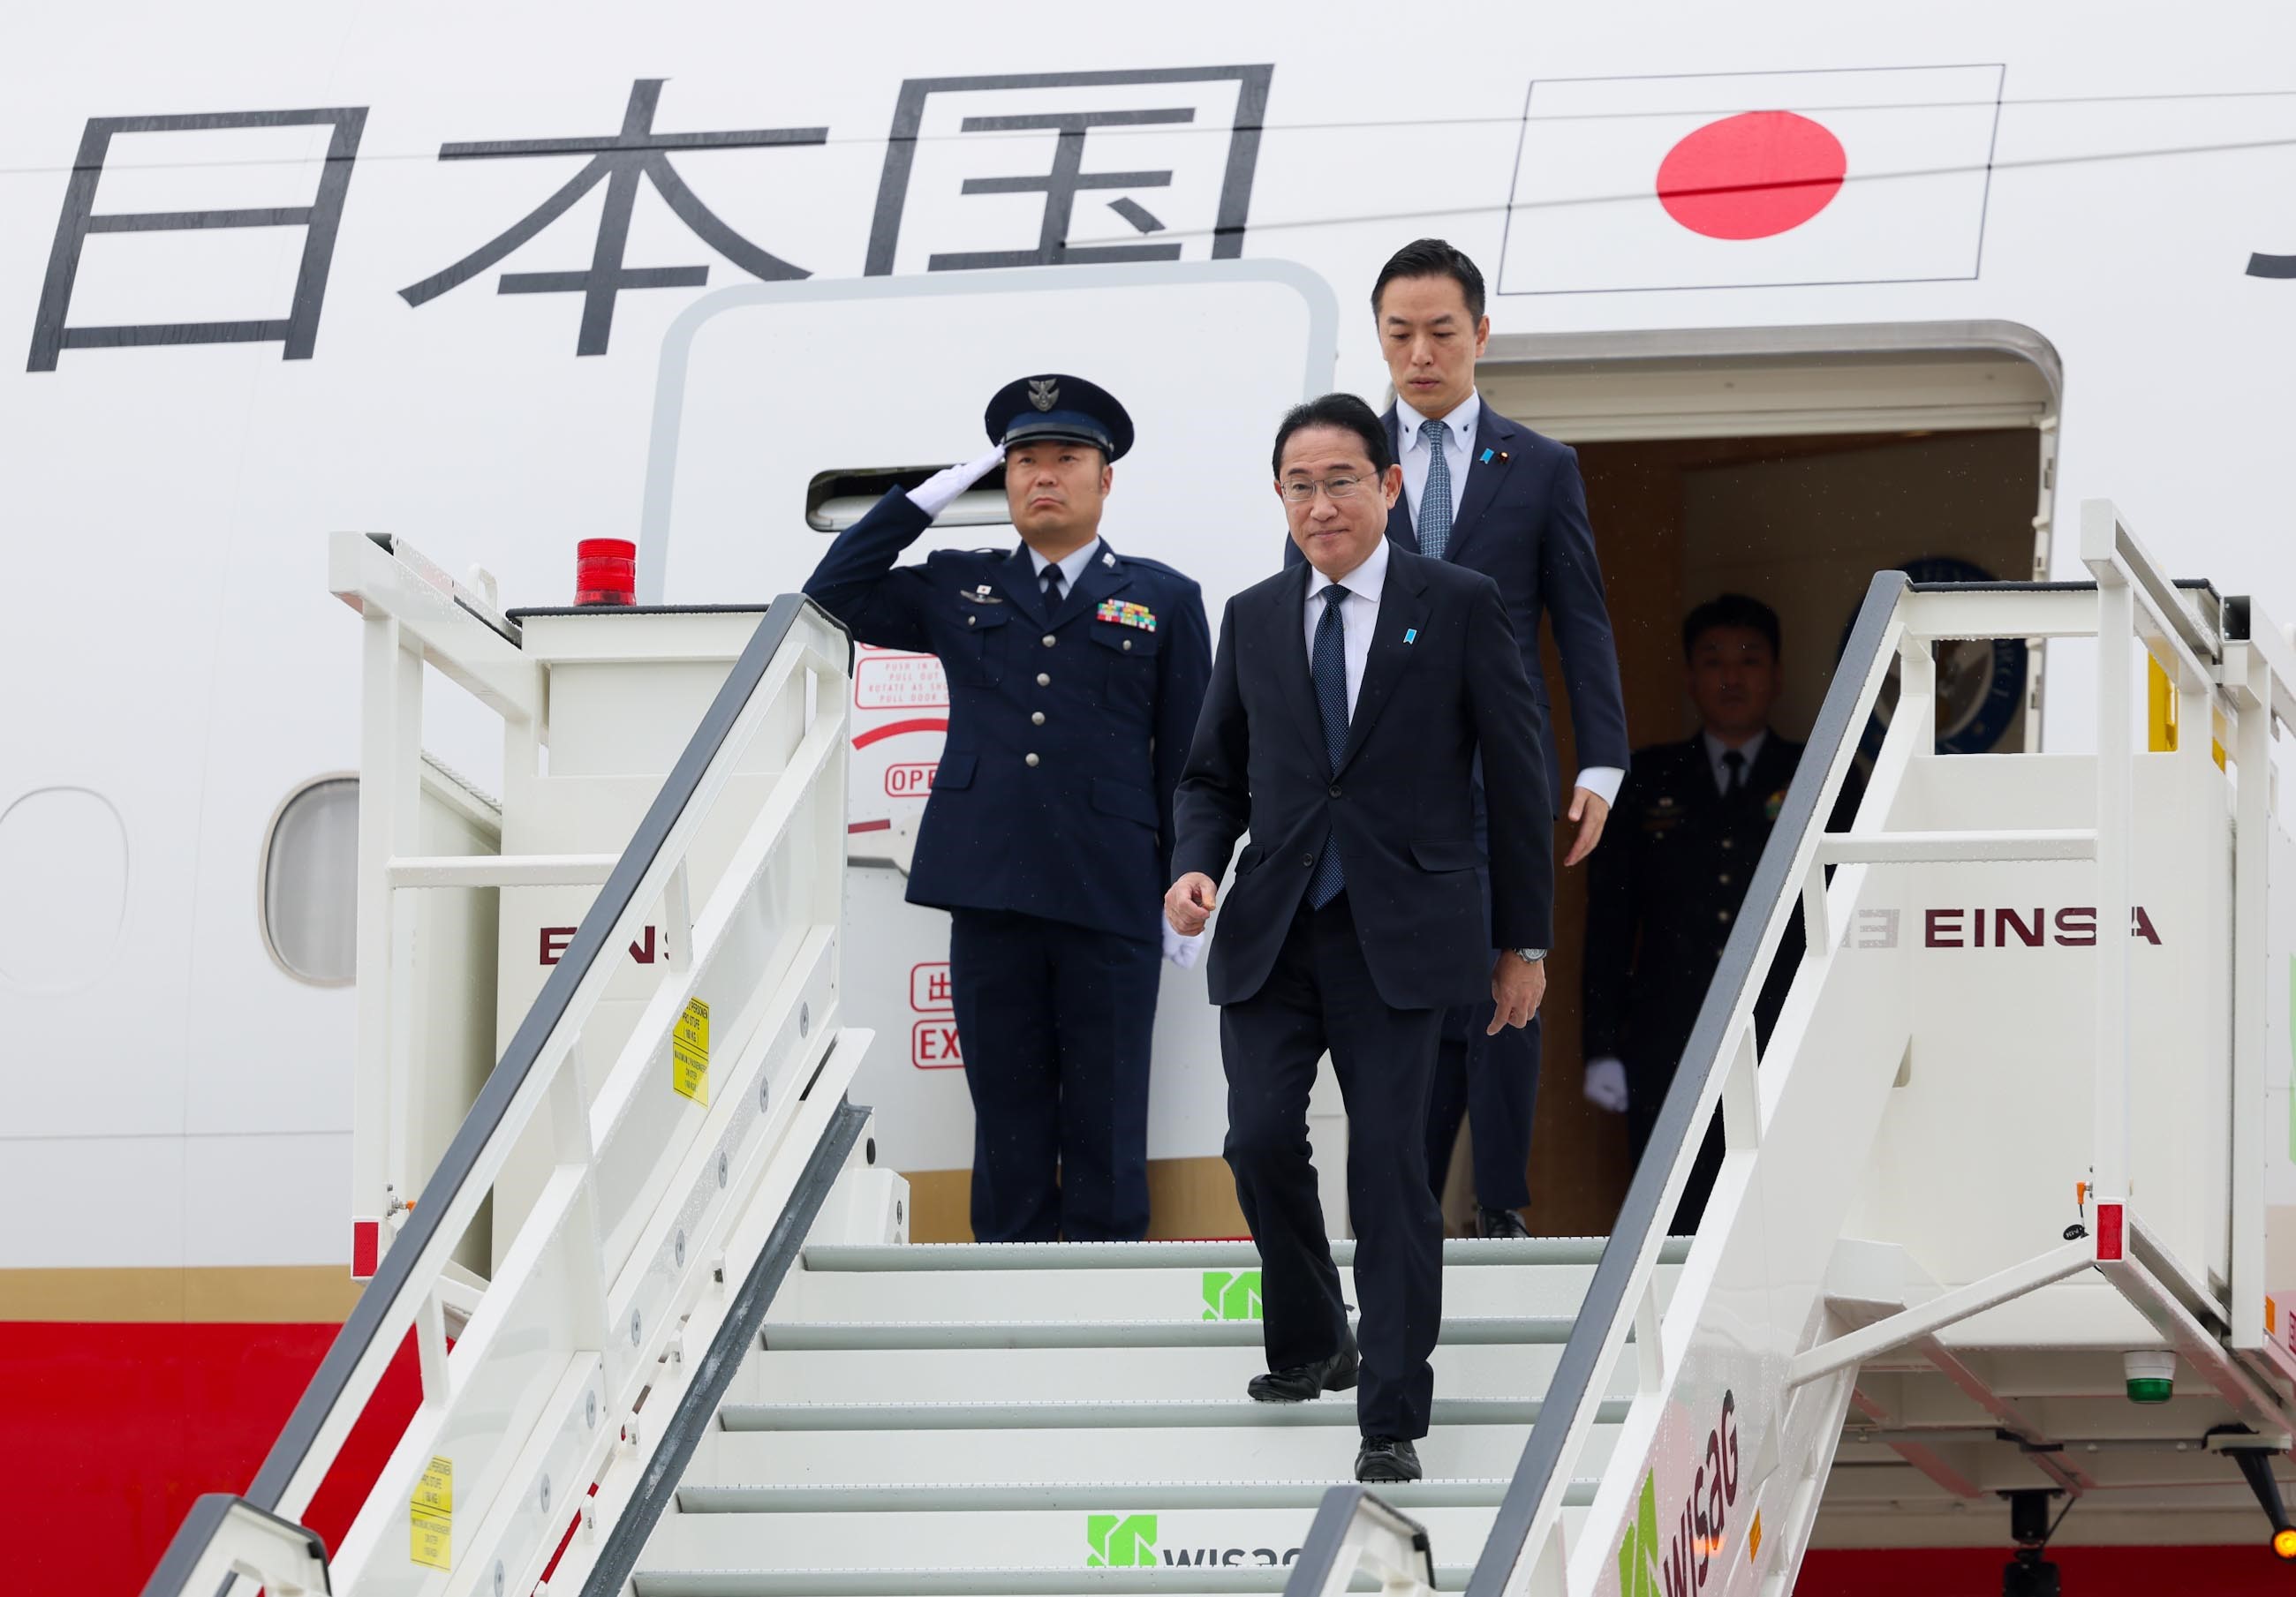 Prime Minister Kishida arriving in Berlin (1)